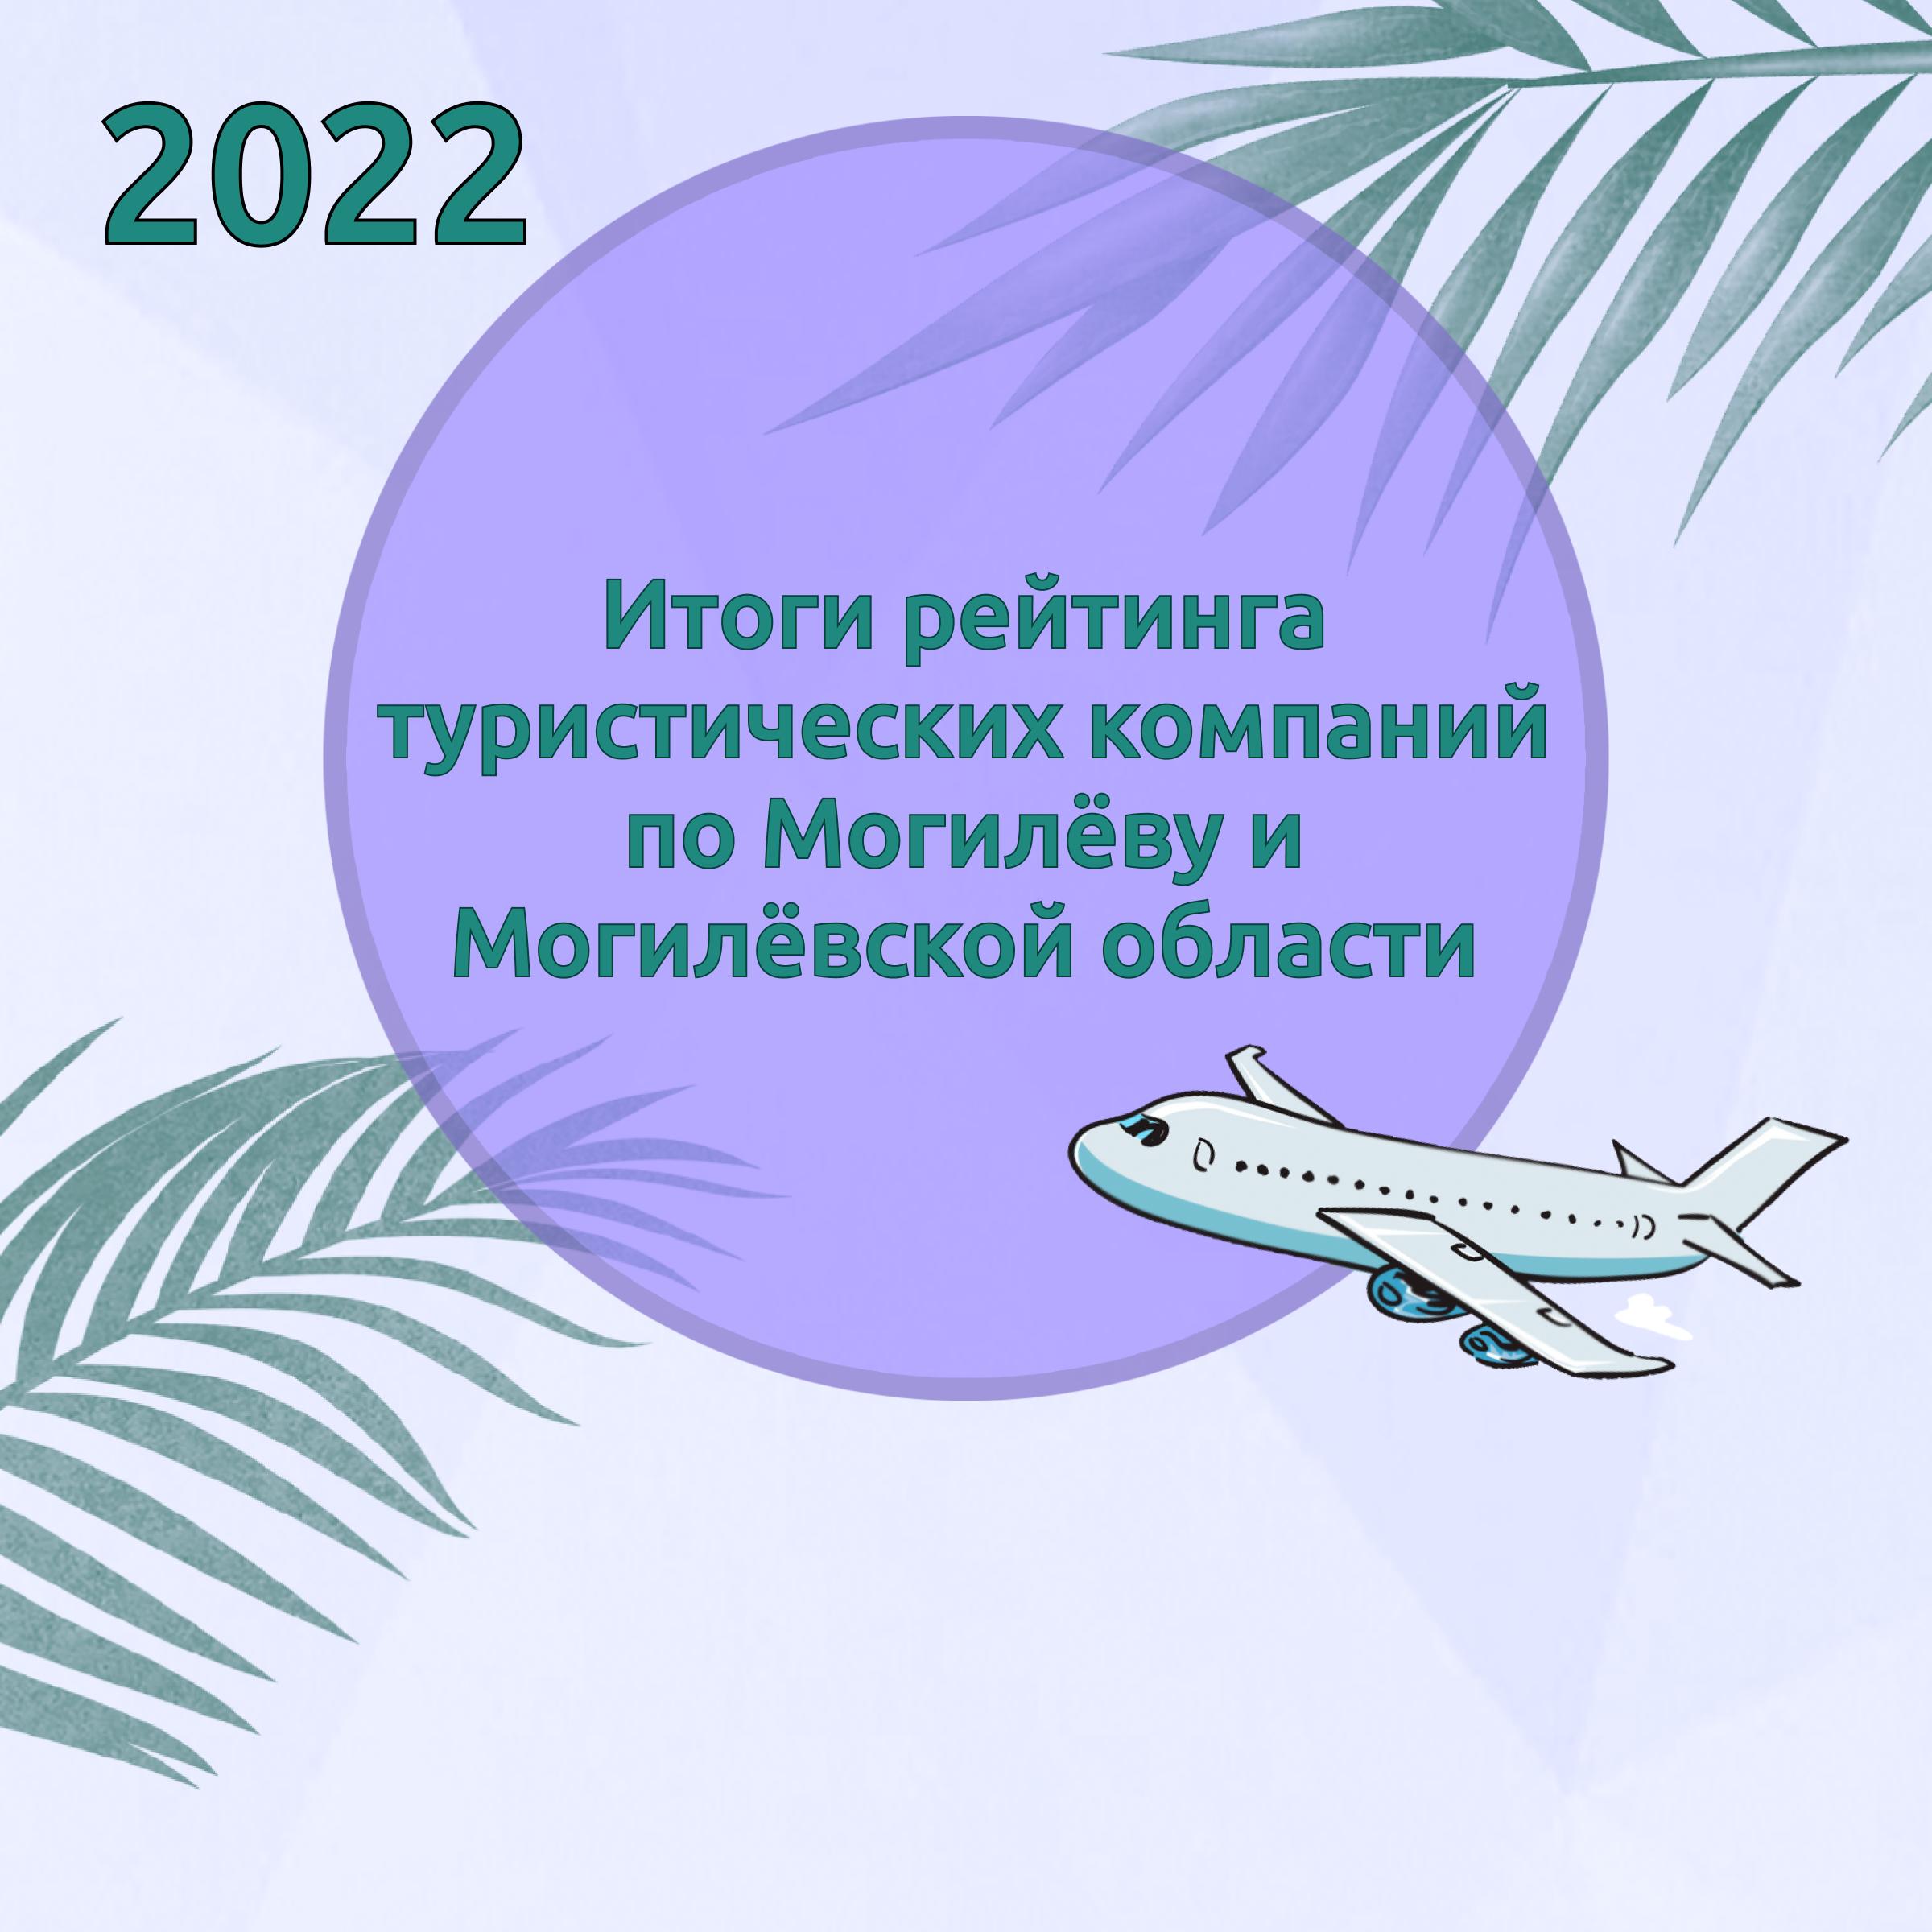 Итоги рейтинга туристических компаний по Могилёву и Могилёвской области за 2022 год